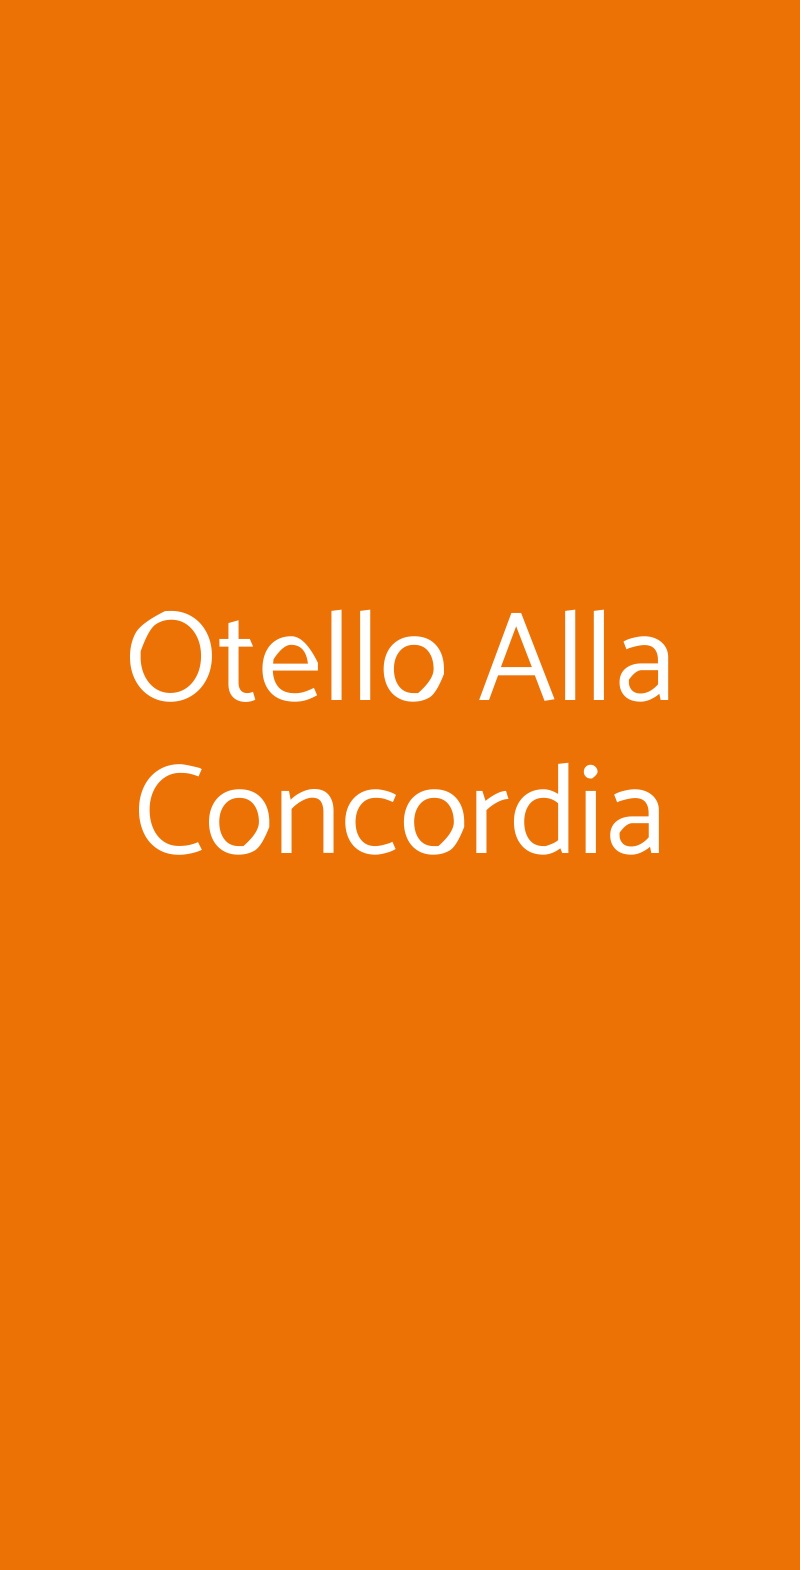 Otello Alla Concordia Roma menù 1 pagina